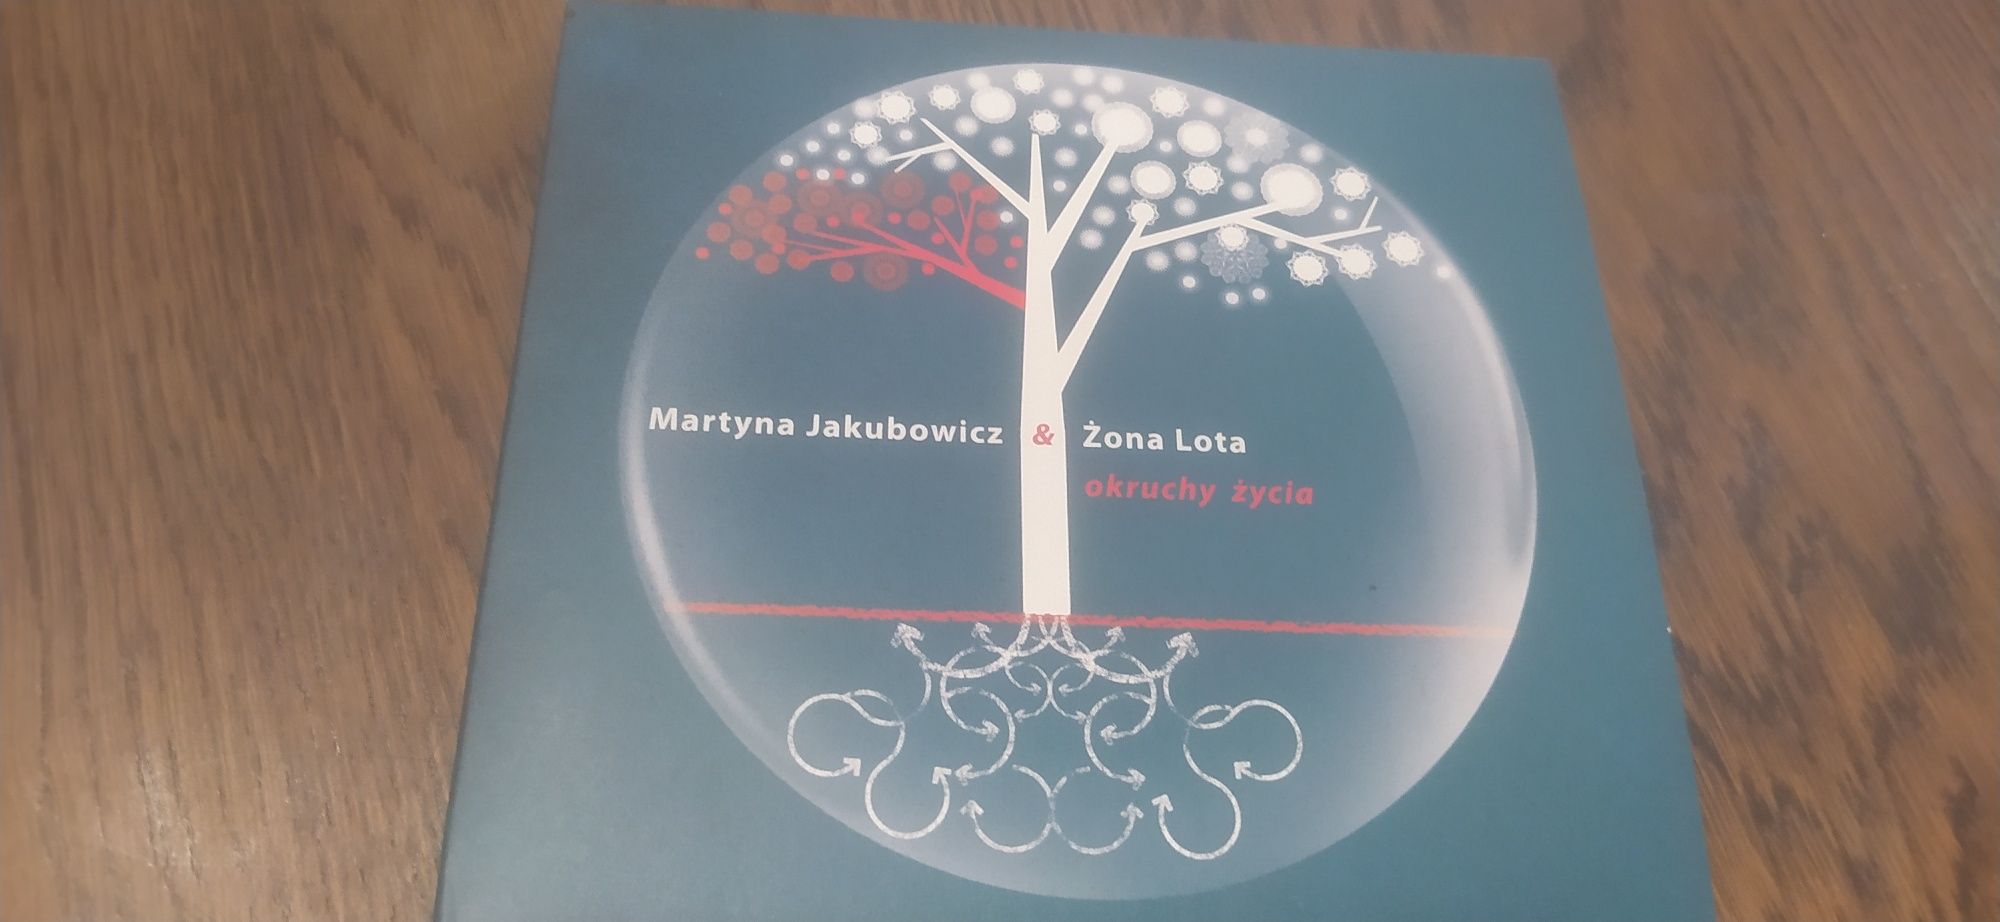 Martyna Jakubowicz & Żona Lota okruchy życia CD